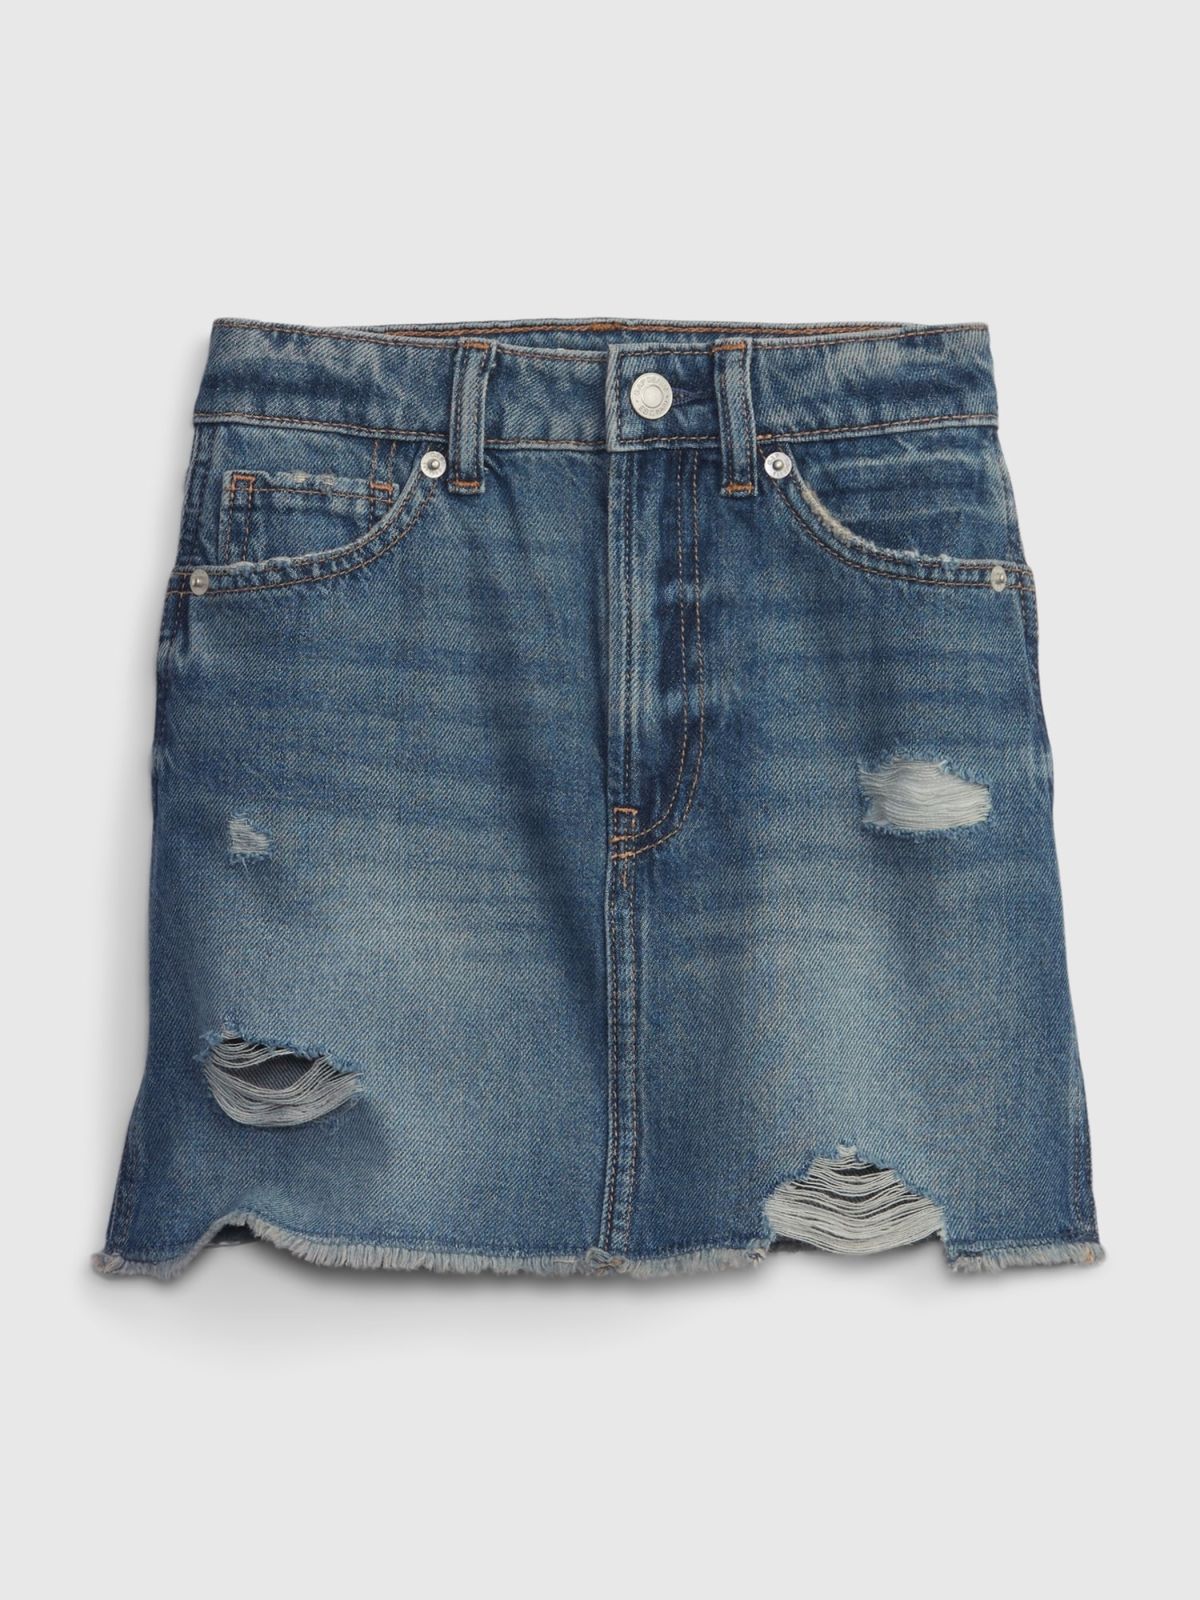  חצאית מיני ג'ינס עם קרעים / בנות של GAP